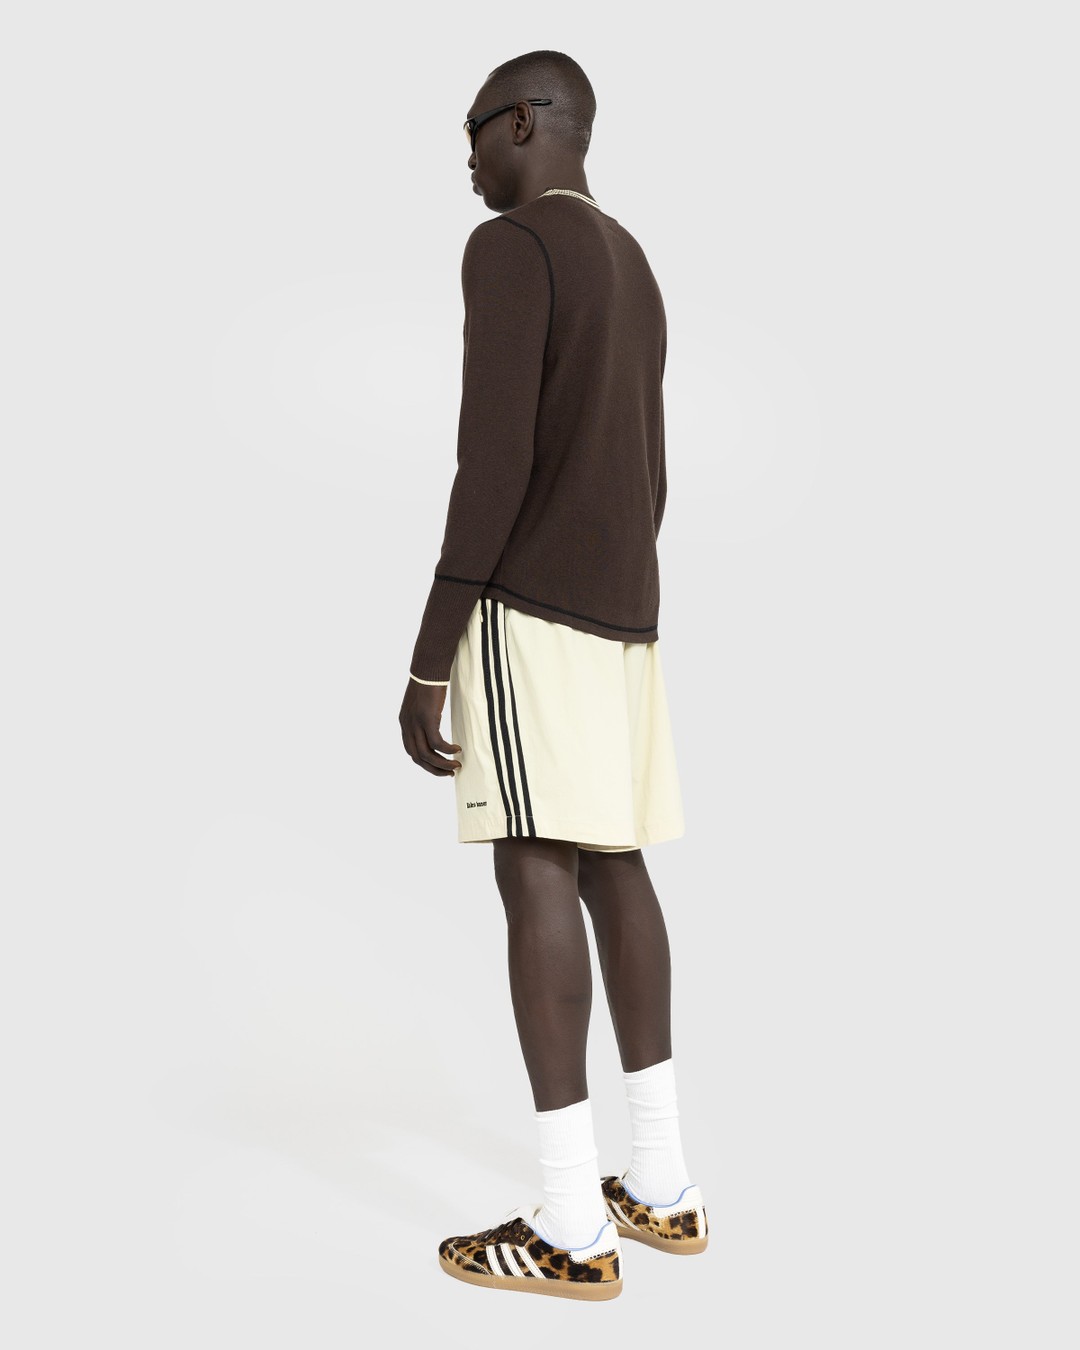 Adidas x Wales Bonner – Knit Long-Sleeve Top Dark Brown - Longsleeves - Brown - Image 4